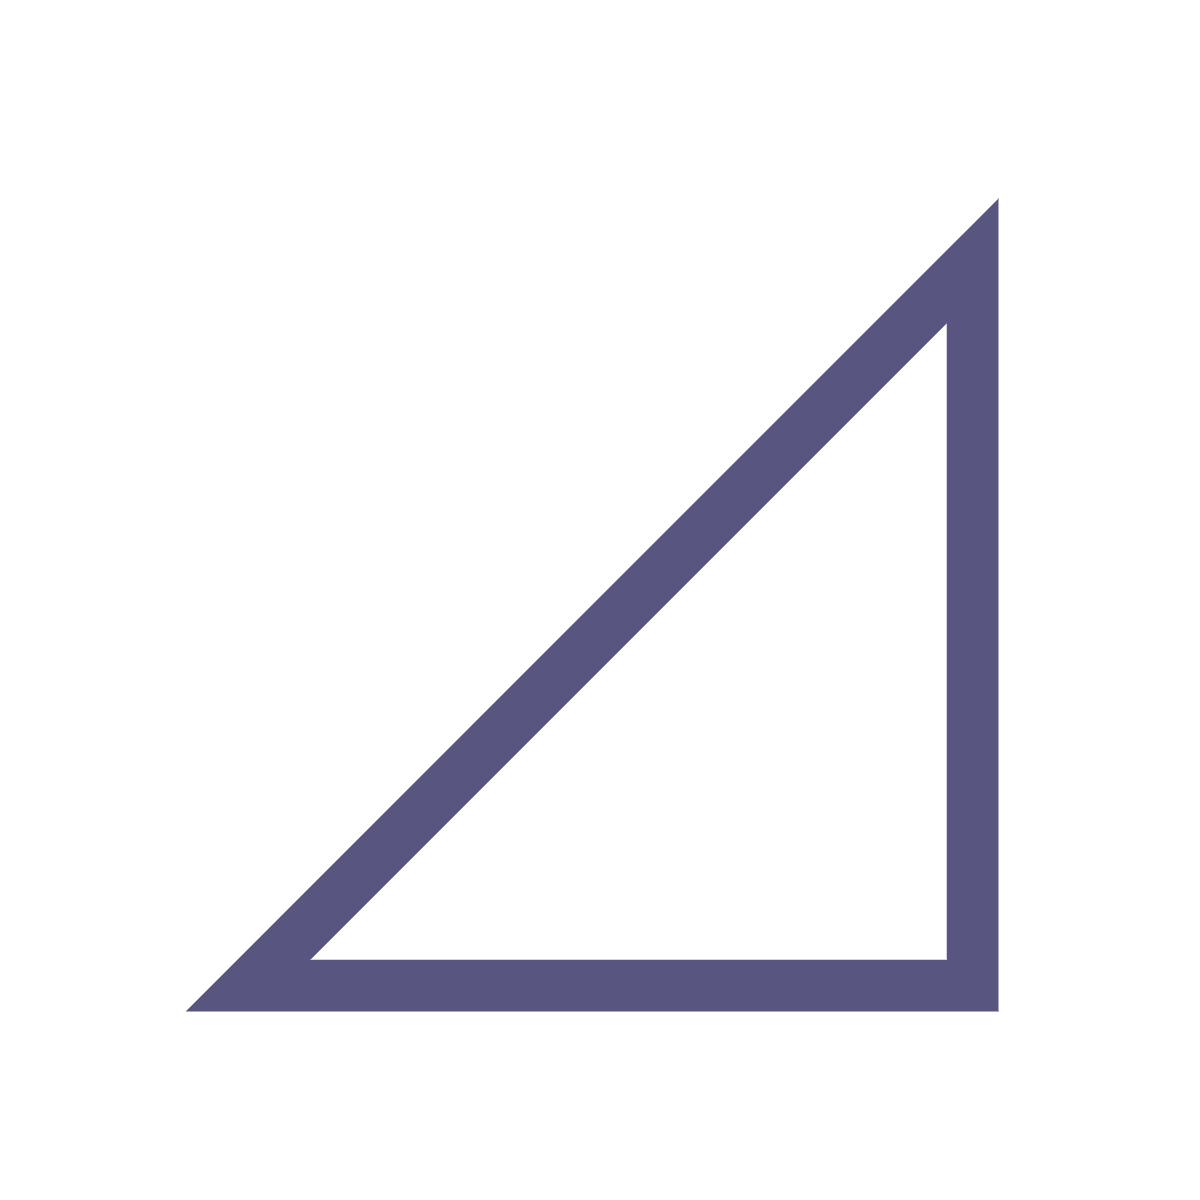 right triangle